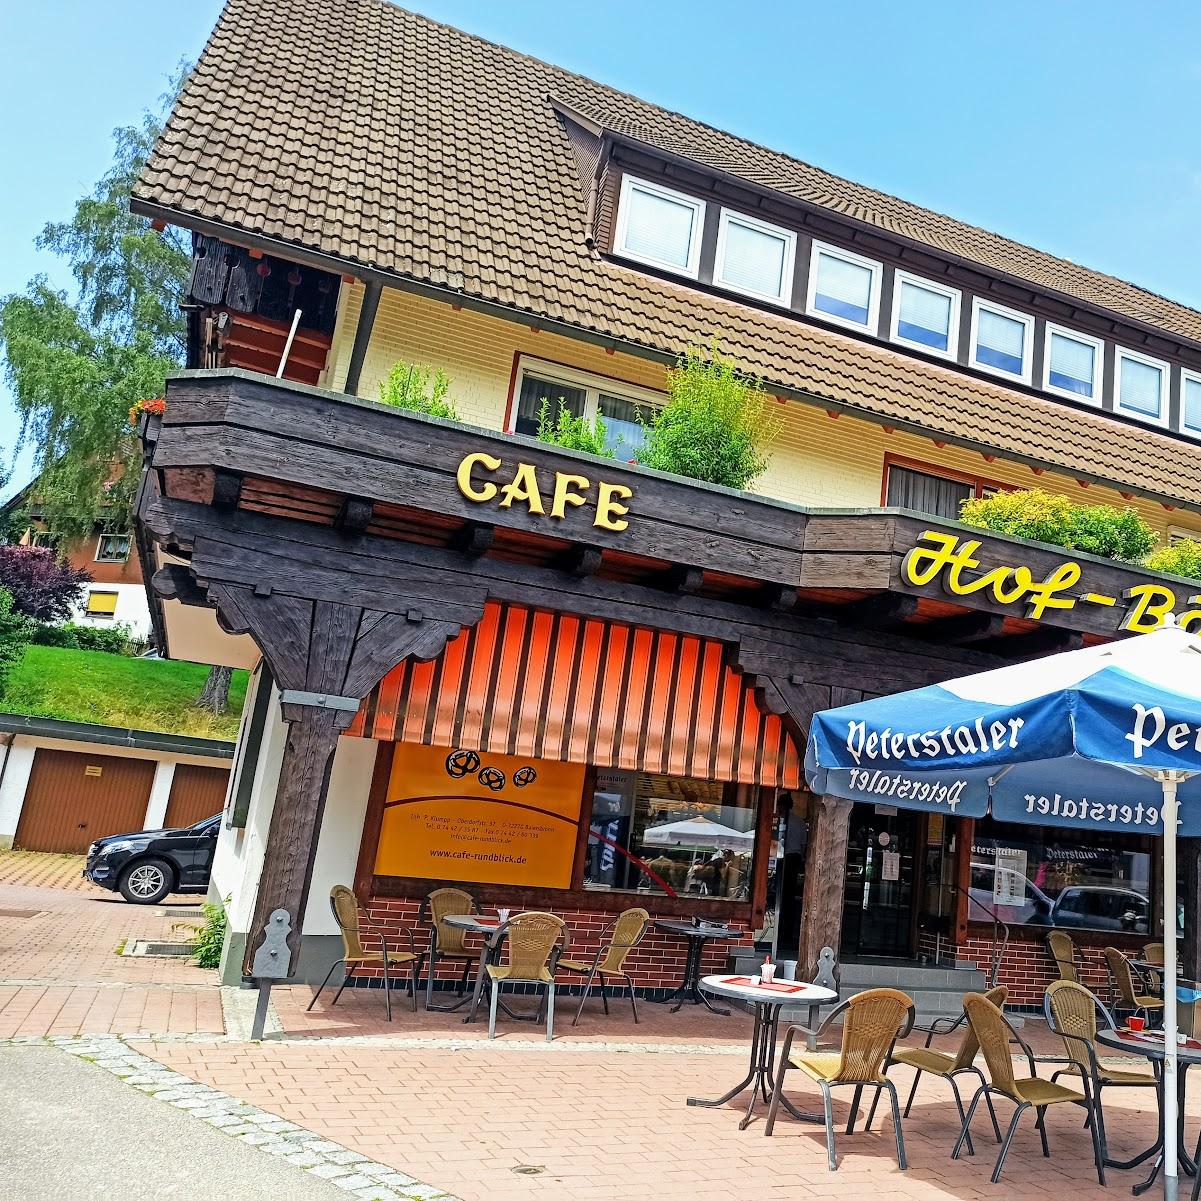 Restaurant "Bäckerei Rundblick - Café am Rosenplatz" in Baiersbronn